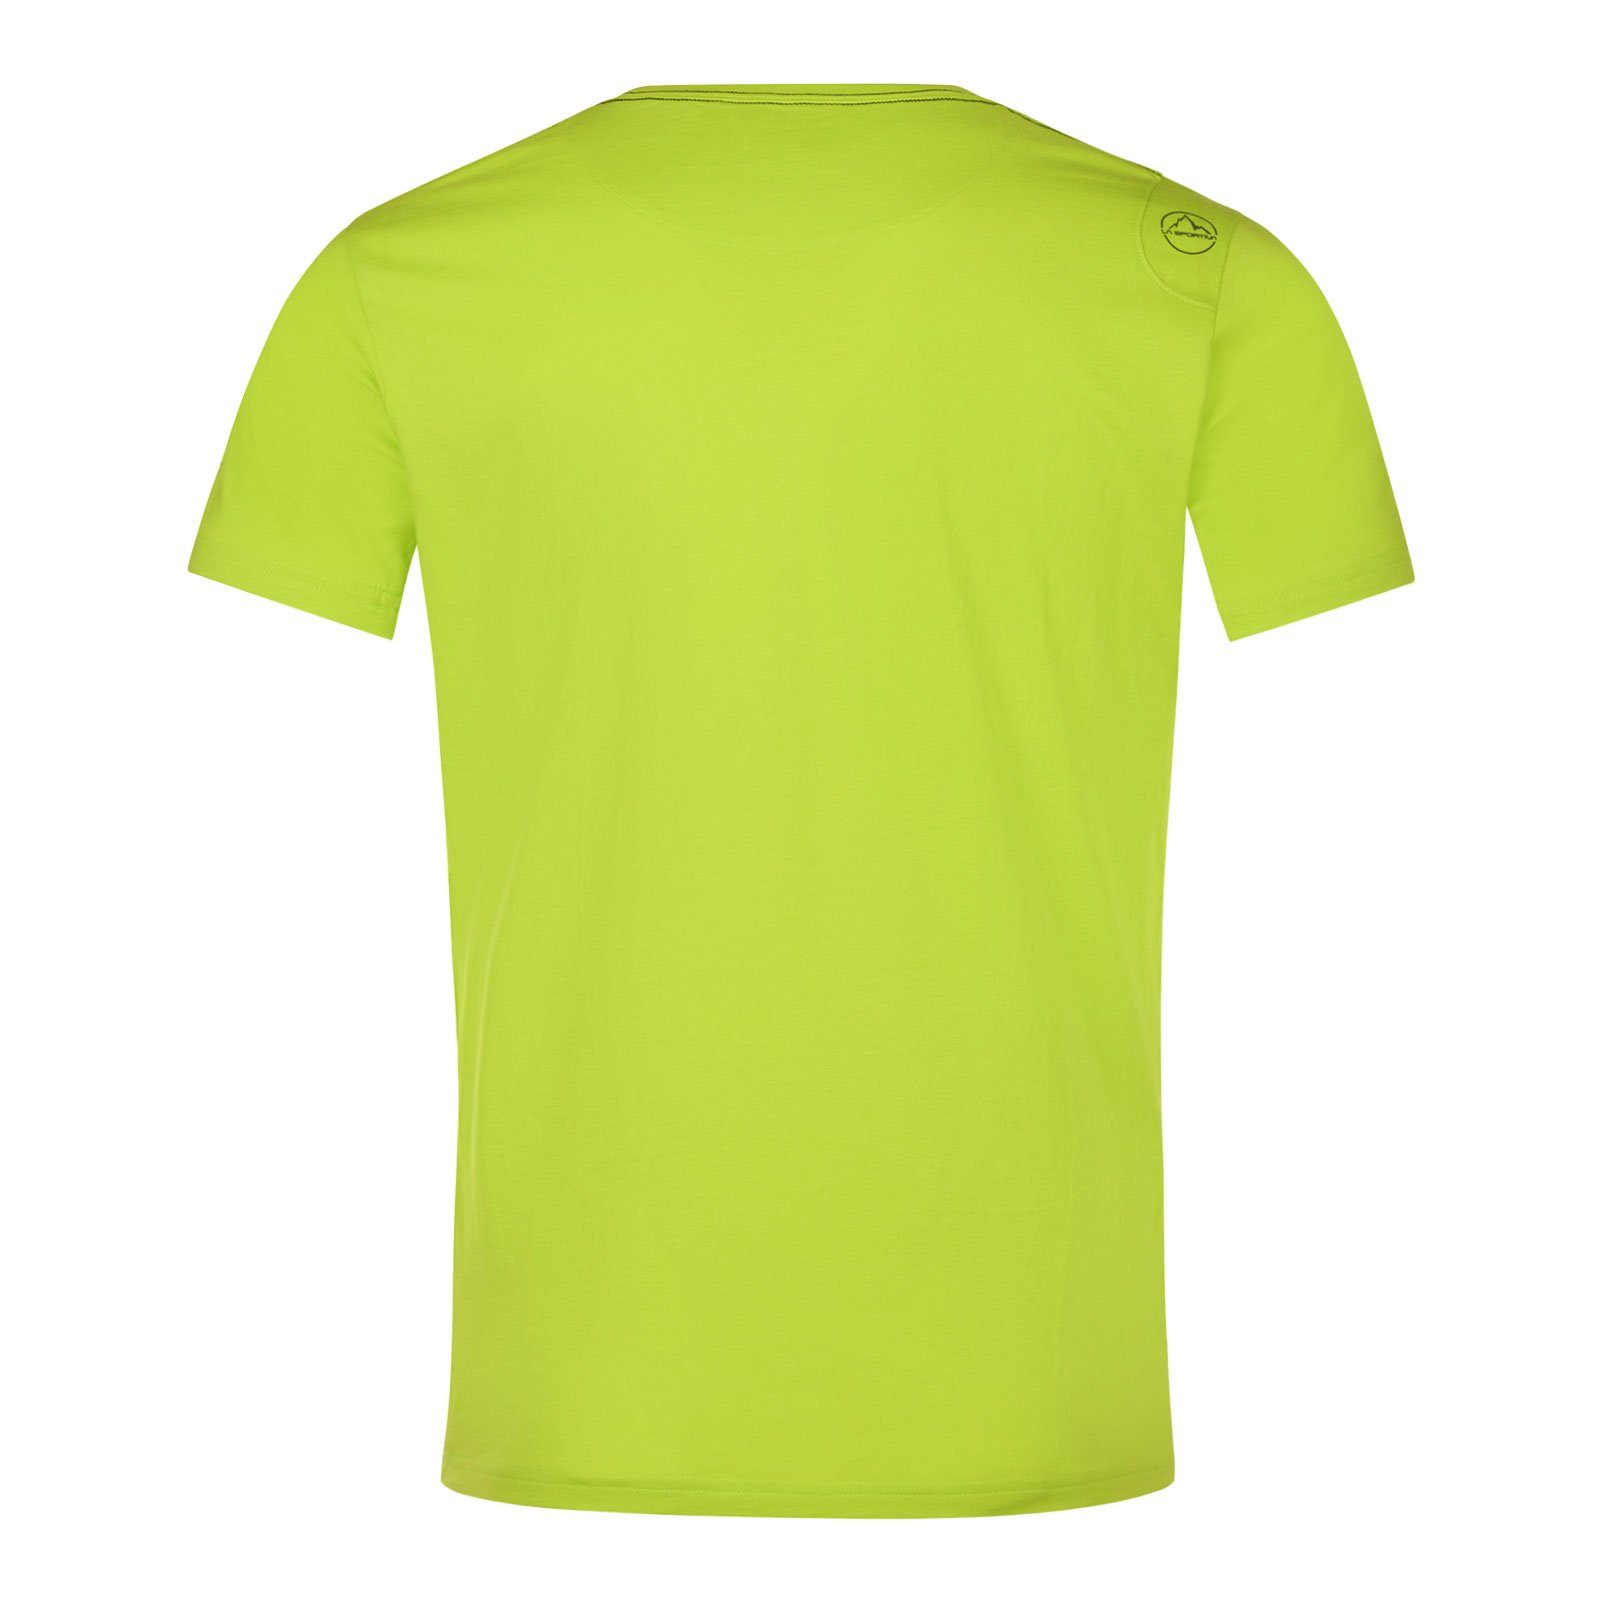 M lime T-Shirt aus Baumwolle Van punch 729729 organischer Sportiva La 100%